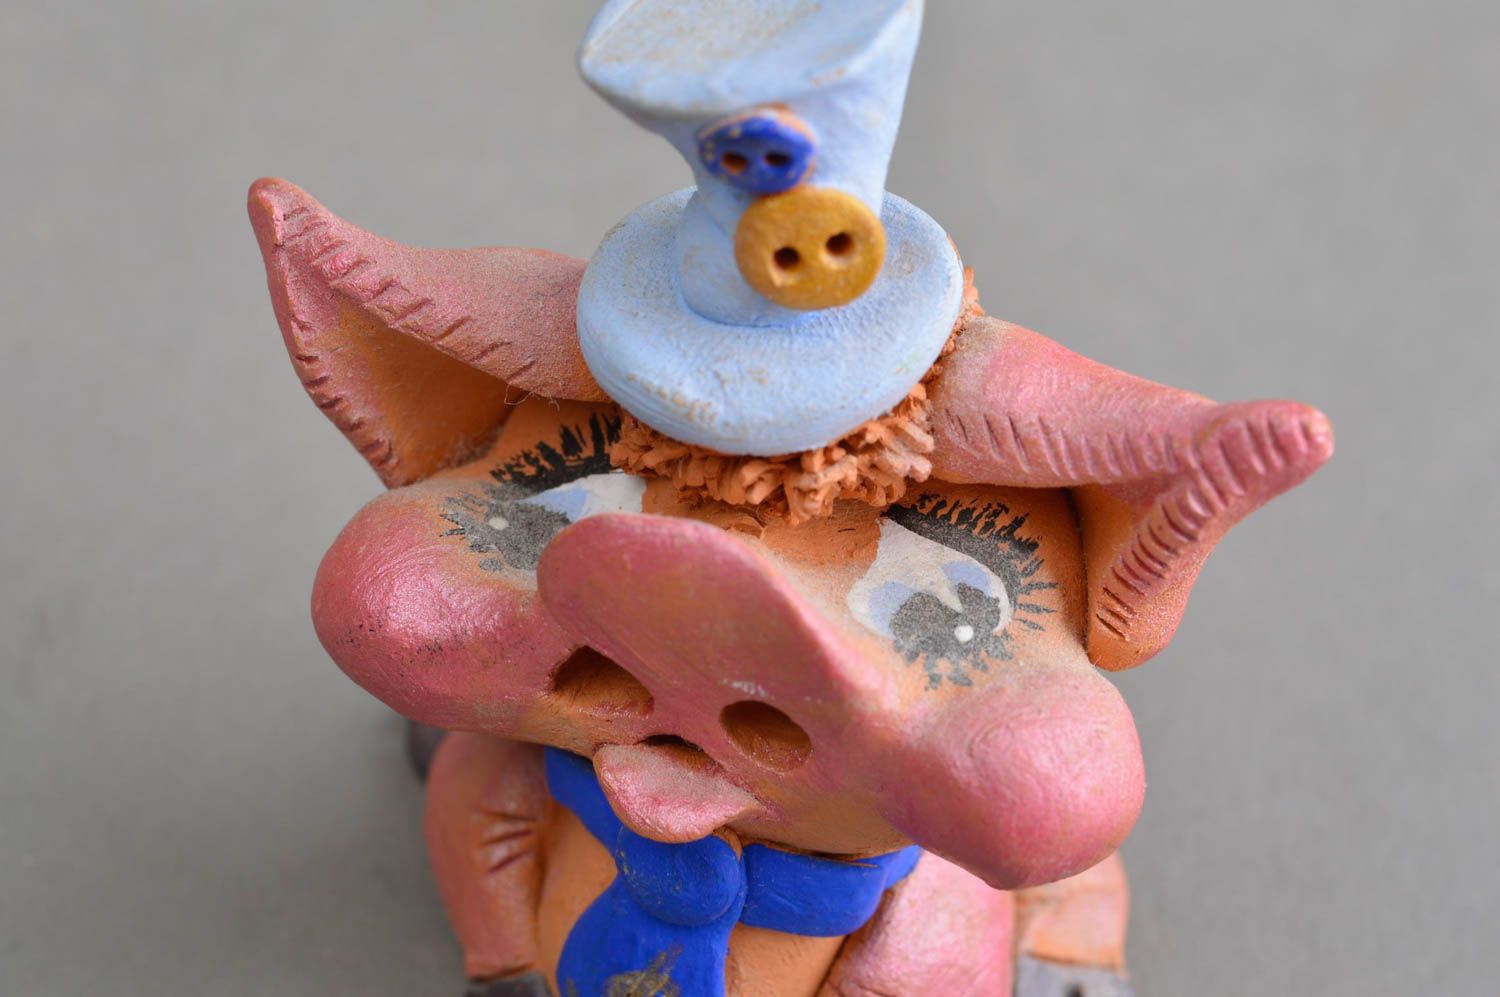 Ceramic statuette handmade pig figurine decorative clay for home decor photo 5